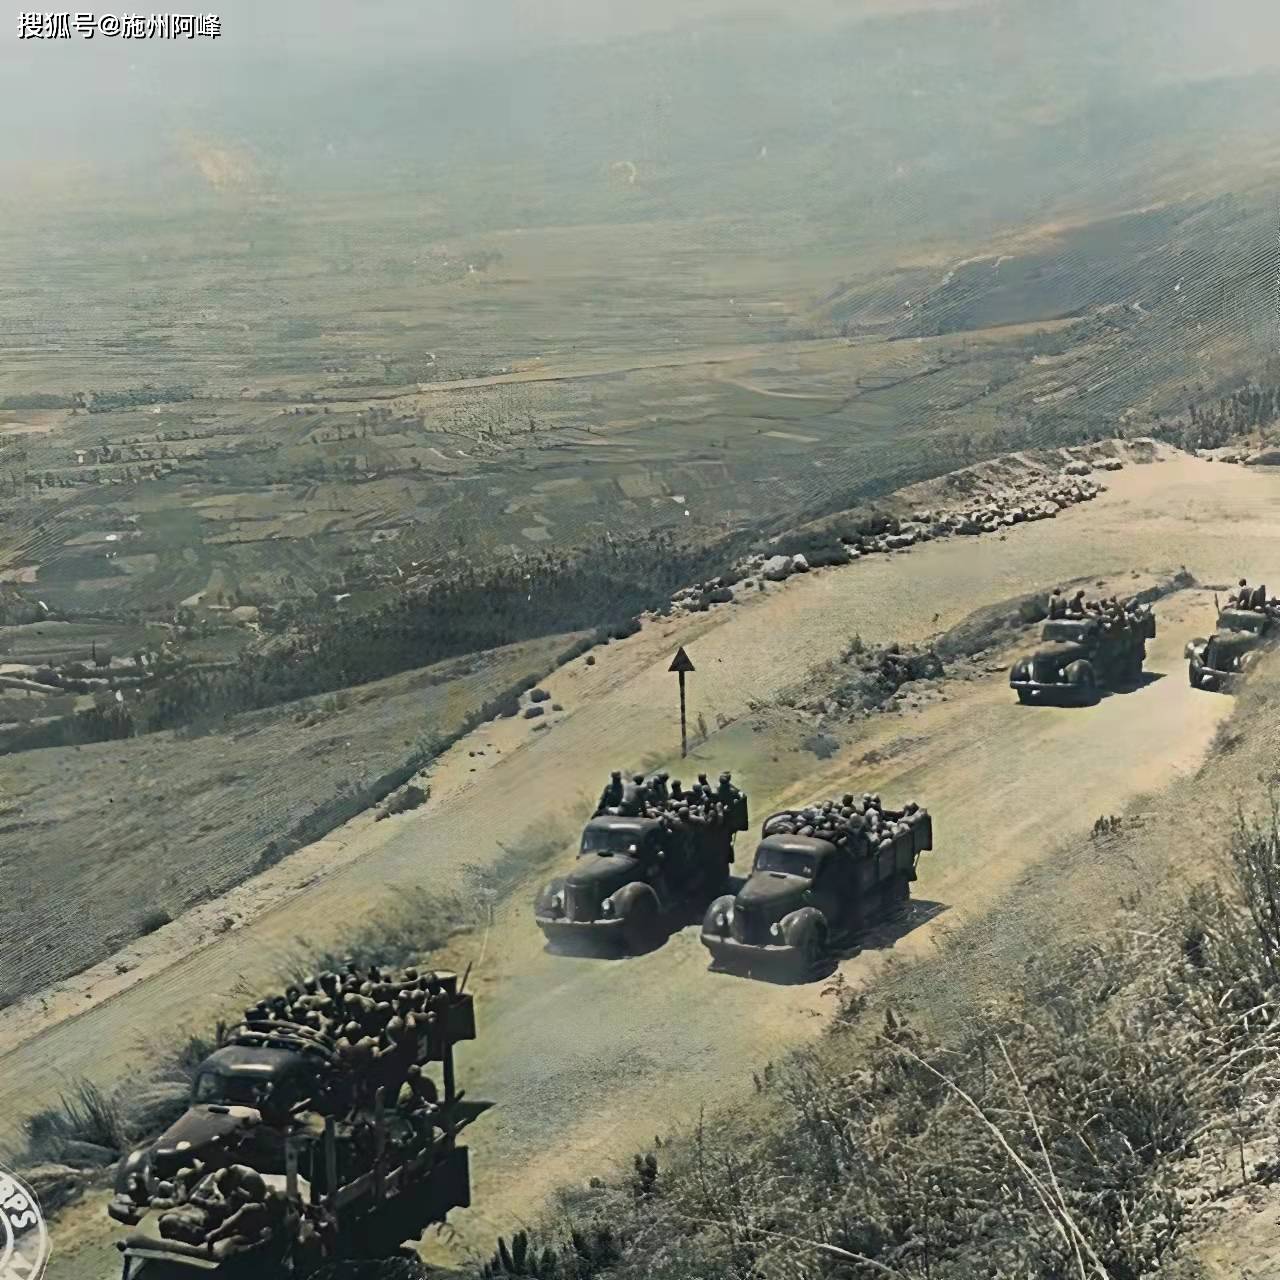 中国远征军1944年在滇缅战场上拍摄的真实照片